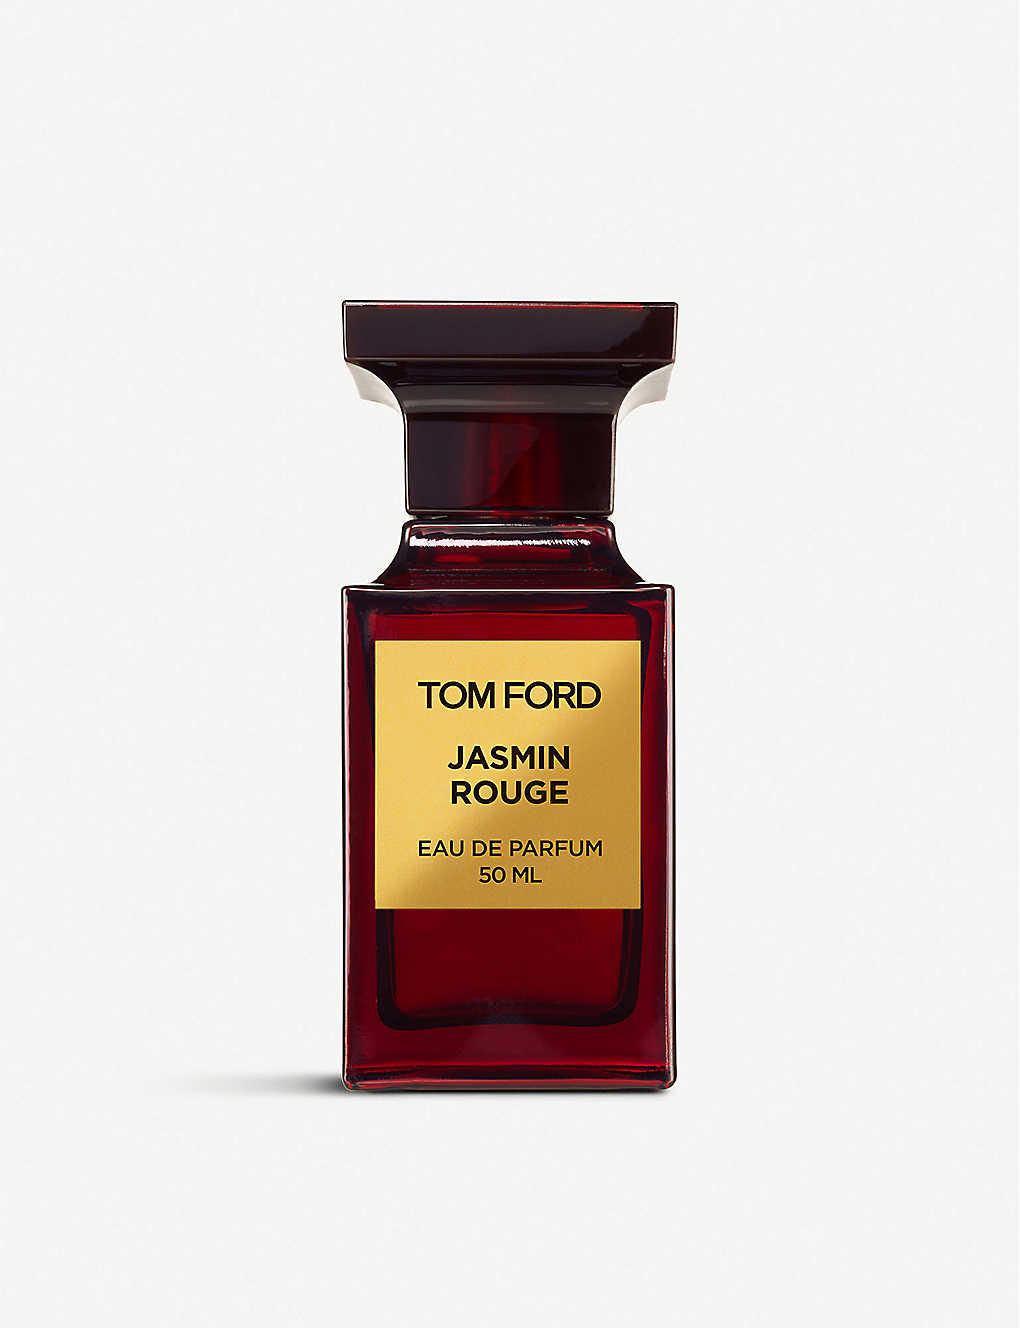 Tom Ford Jasmln Rouge Eau De Parfum 50ml